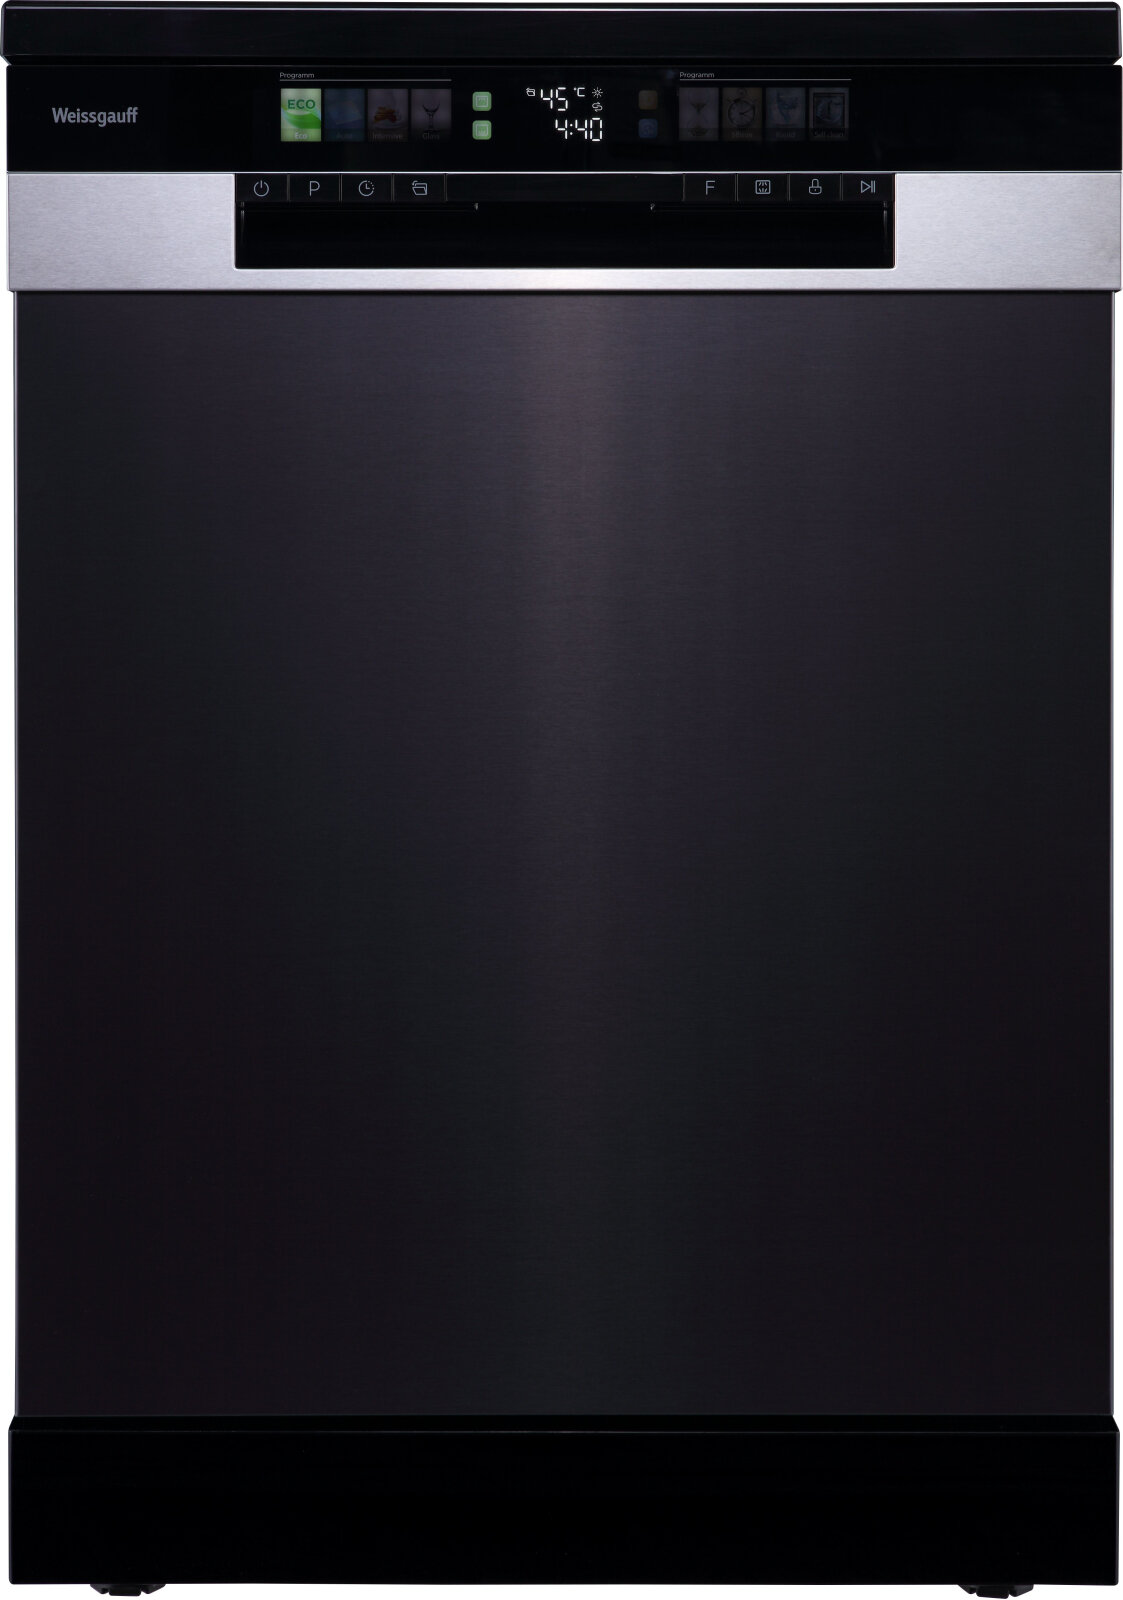 Посудомоечная машина с авто-открыванием и инвертором Weissgauff DW 6140 Inverter Real Touch AutoOpen,3 года гарантии, 14 комплектов, 3 корзины, цветной дисплей, выбор уровня мойки, дополнительная сушка, программа стерилизации, полная защита от протечек